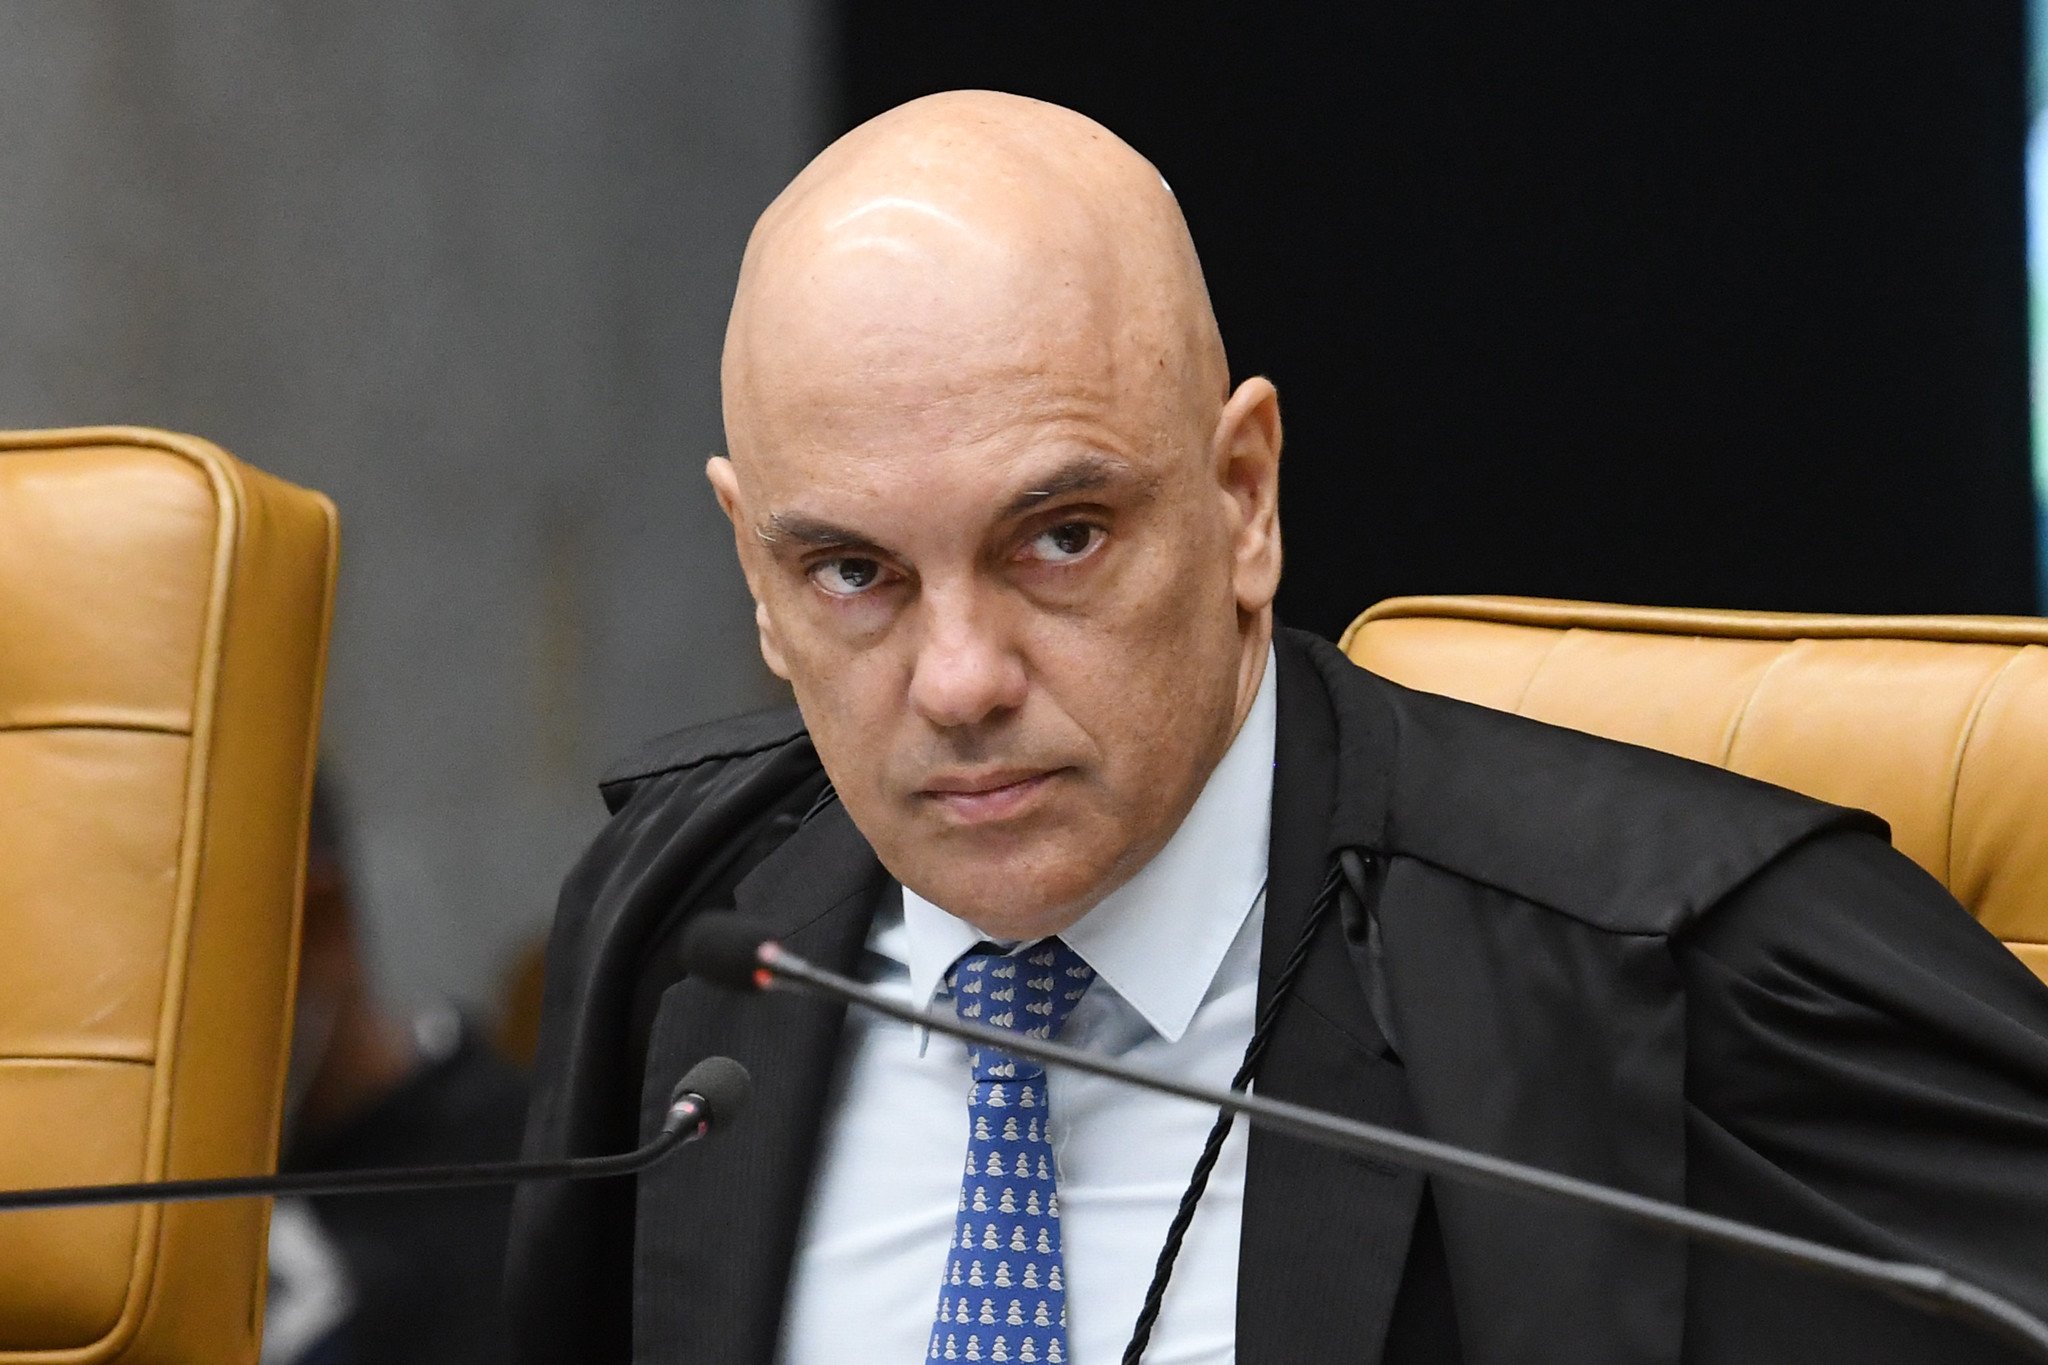 Ministro do STF participa de concurso para professor titular de direito eleitoral na Faculdade de Direito, em São Paulo